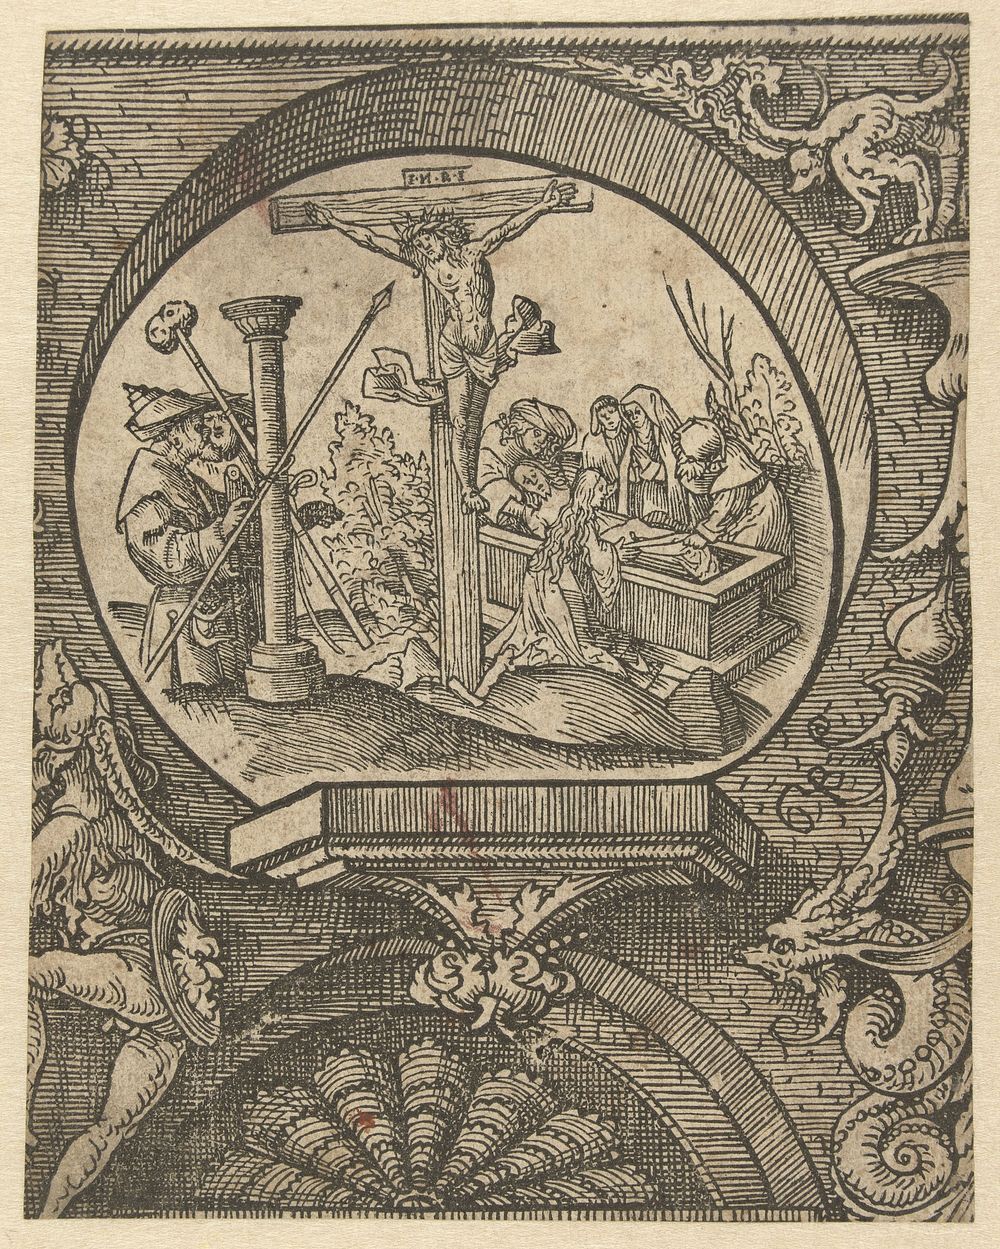 De kruisiging en de graflegging van Christus (1520) by Jacob Cornelisz van Oostsanen and Doen Pietersz